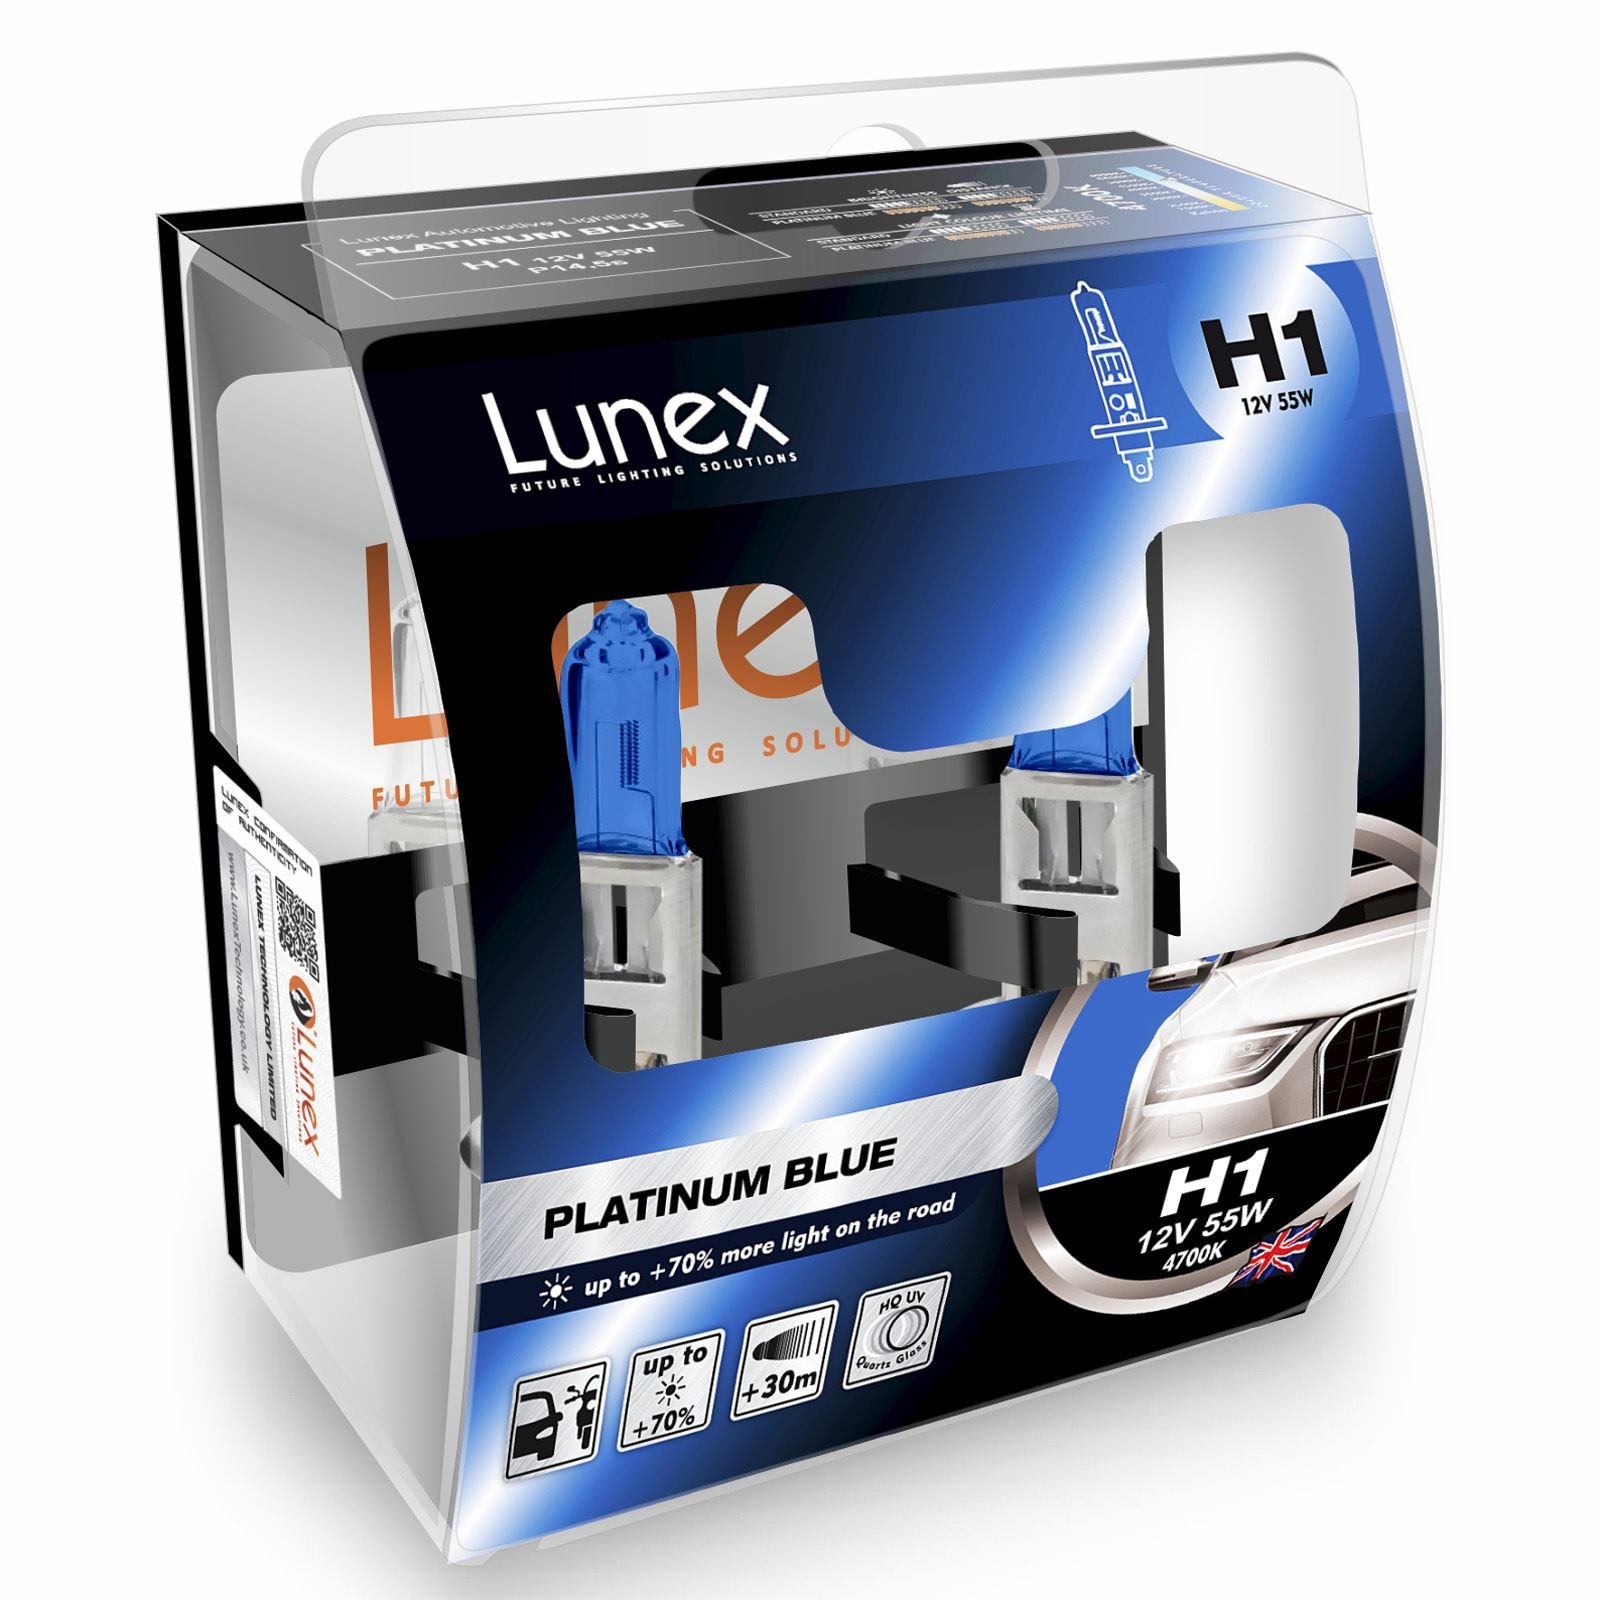 Lunex H1 PLATINUM BLUE 448 Scheinwerfer Halogenbirnen Lampen Blau 12V 55W P14,5s 4700K duobox (2 Stücke) von Lunex